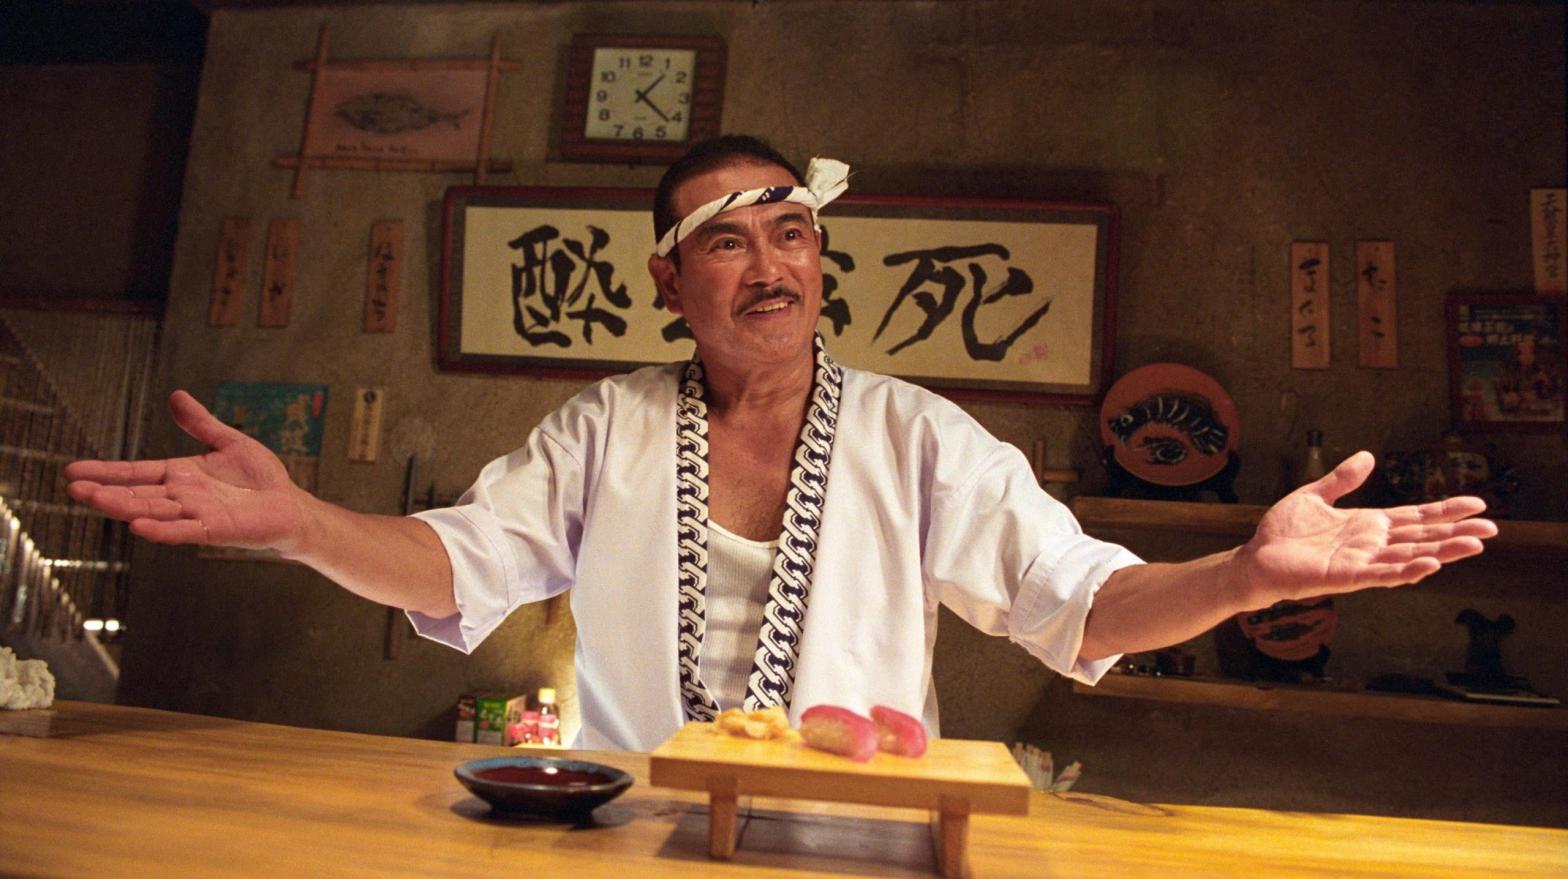 Sonny Chiba as sword-maker Hattori Honzo in Kill Bill Vol. 1. (Image: Miramax)